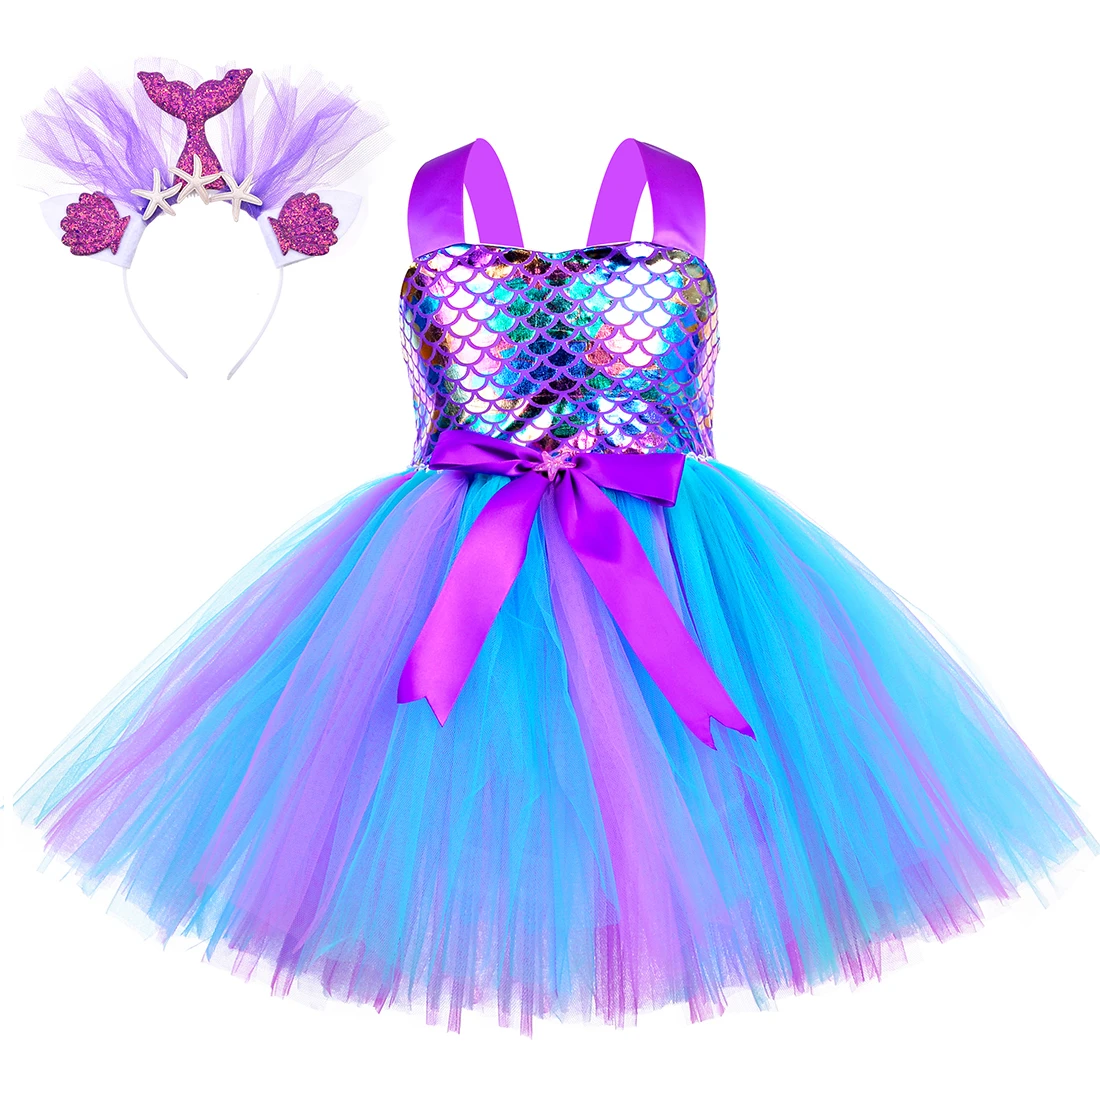 

Платье-Русалка для девочек, детское вечернее платье на день рождения, костюм маленькой принцессы Русалочки на Хэллоуин, Рождество, наряд